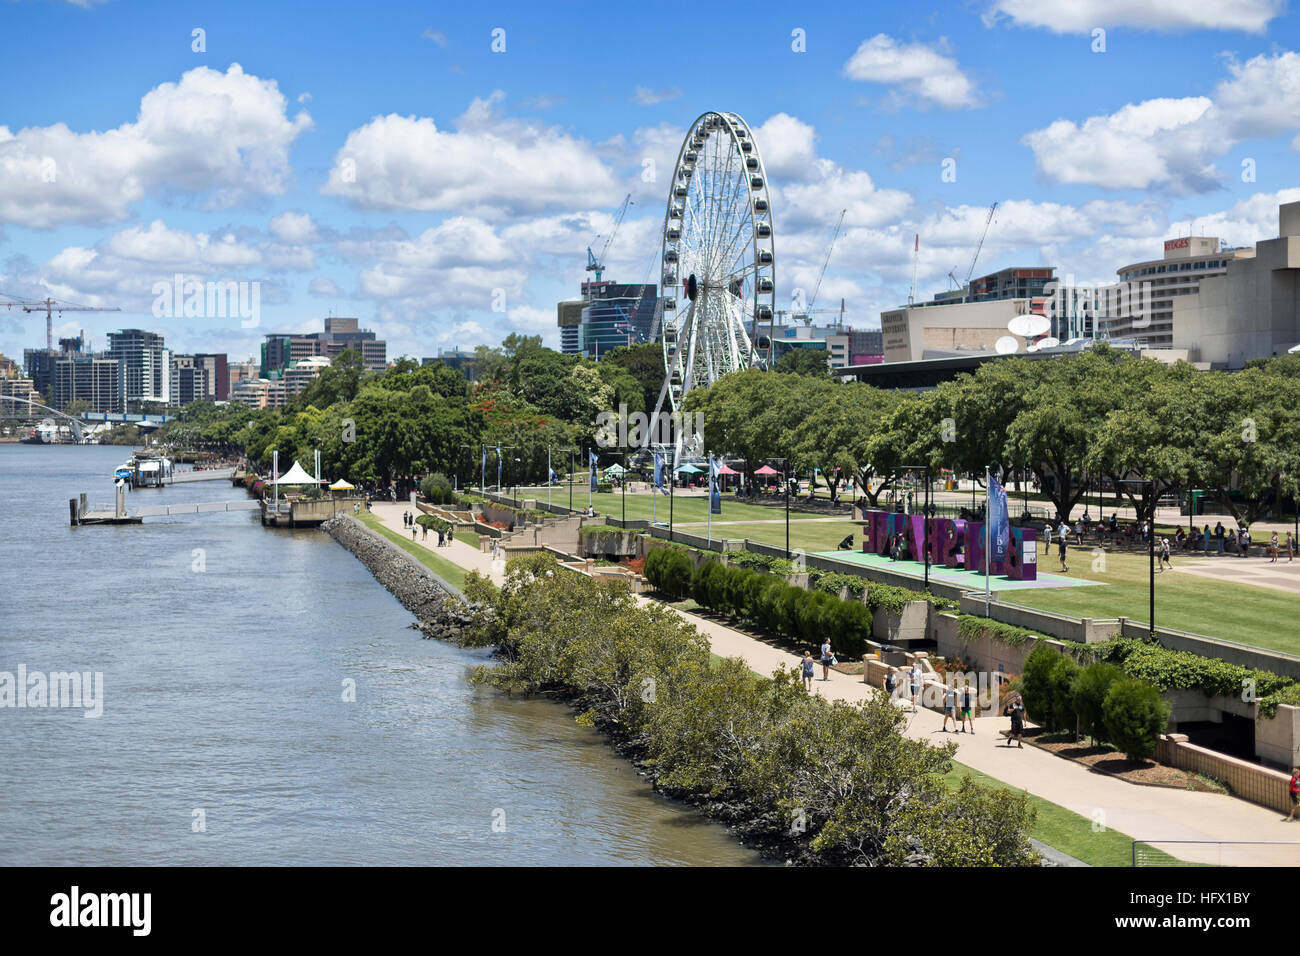 La Ruota Panoramica di Brisbane è un quasi 60 metri di altezza ruota panoramica Ferris installato nel South Bank Parklands, Brisbane, Australia. Foto Stock